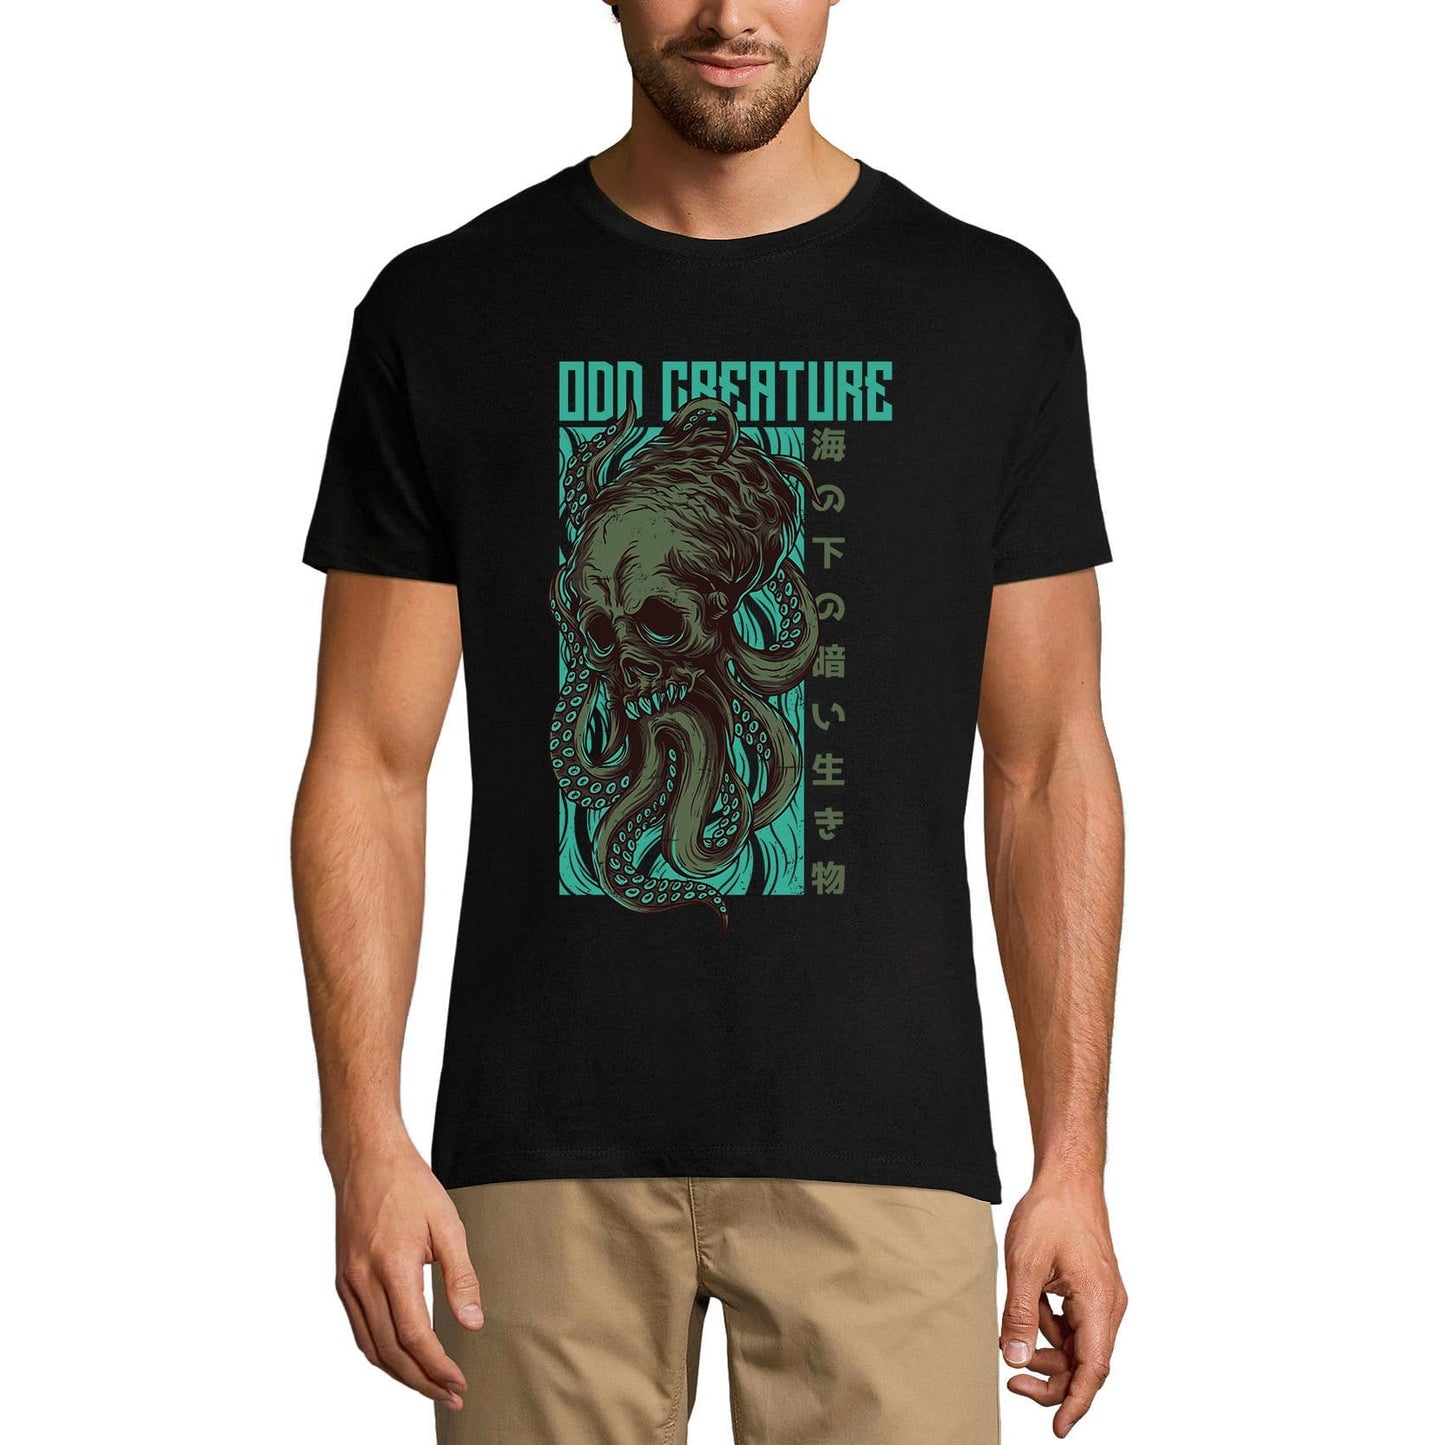 ULTRABASIC Men's Novelty T-Shirt Odd Creature - Alien Tee Shirt